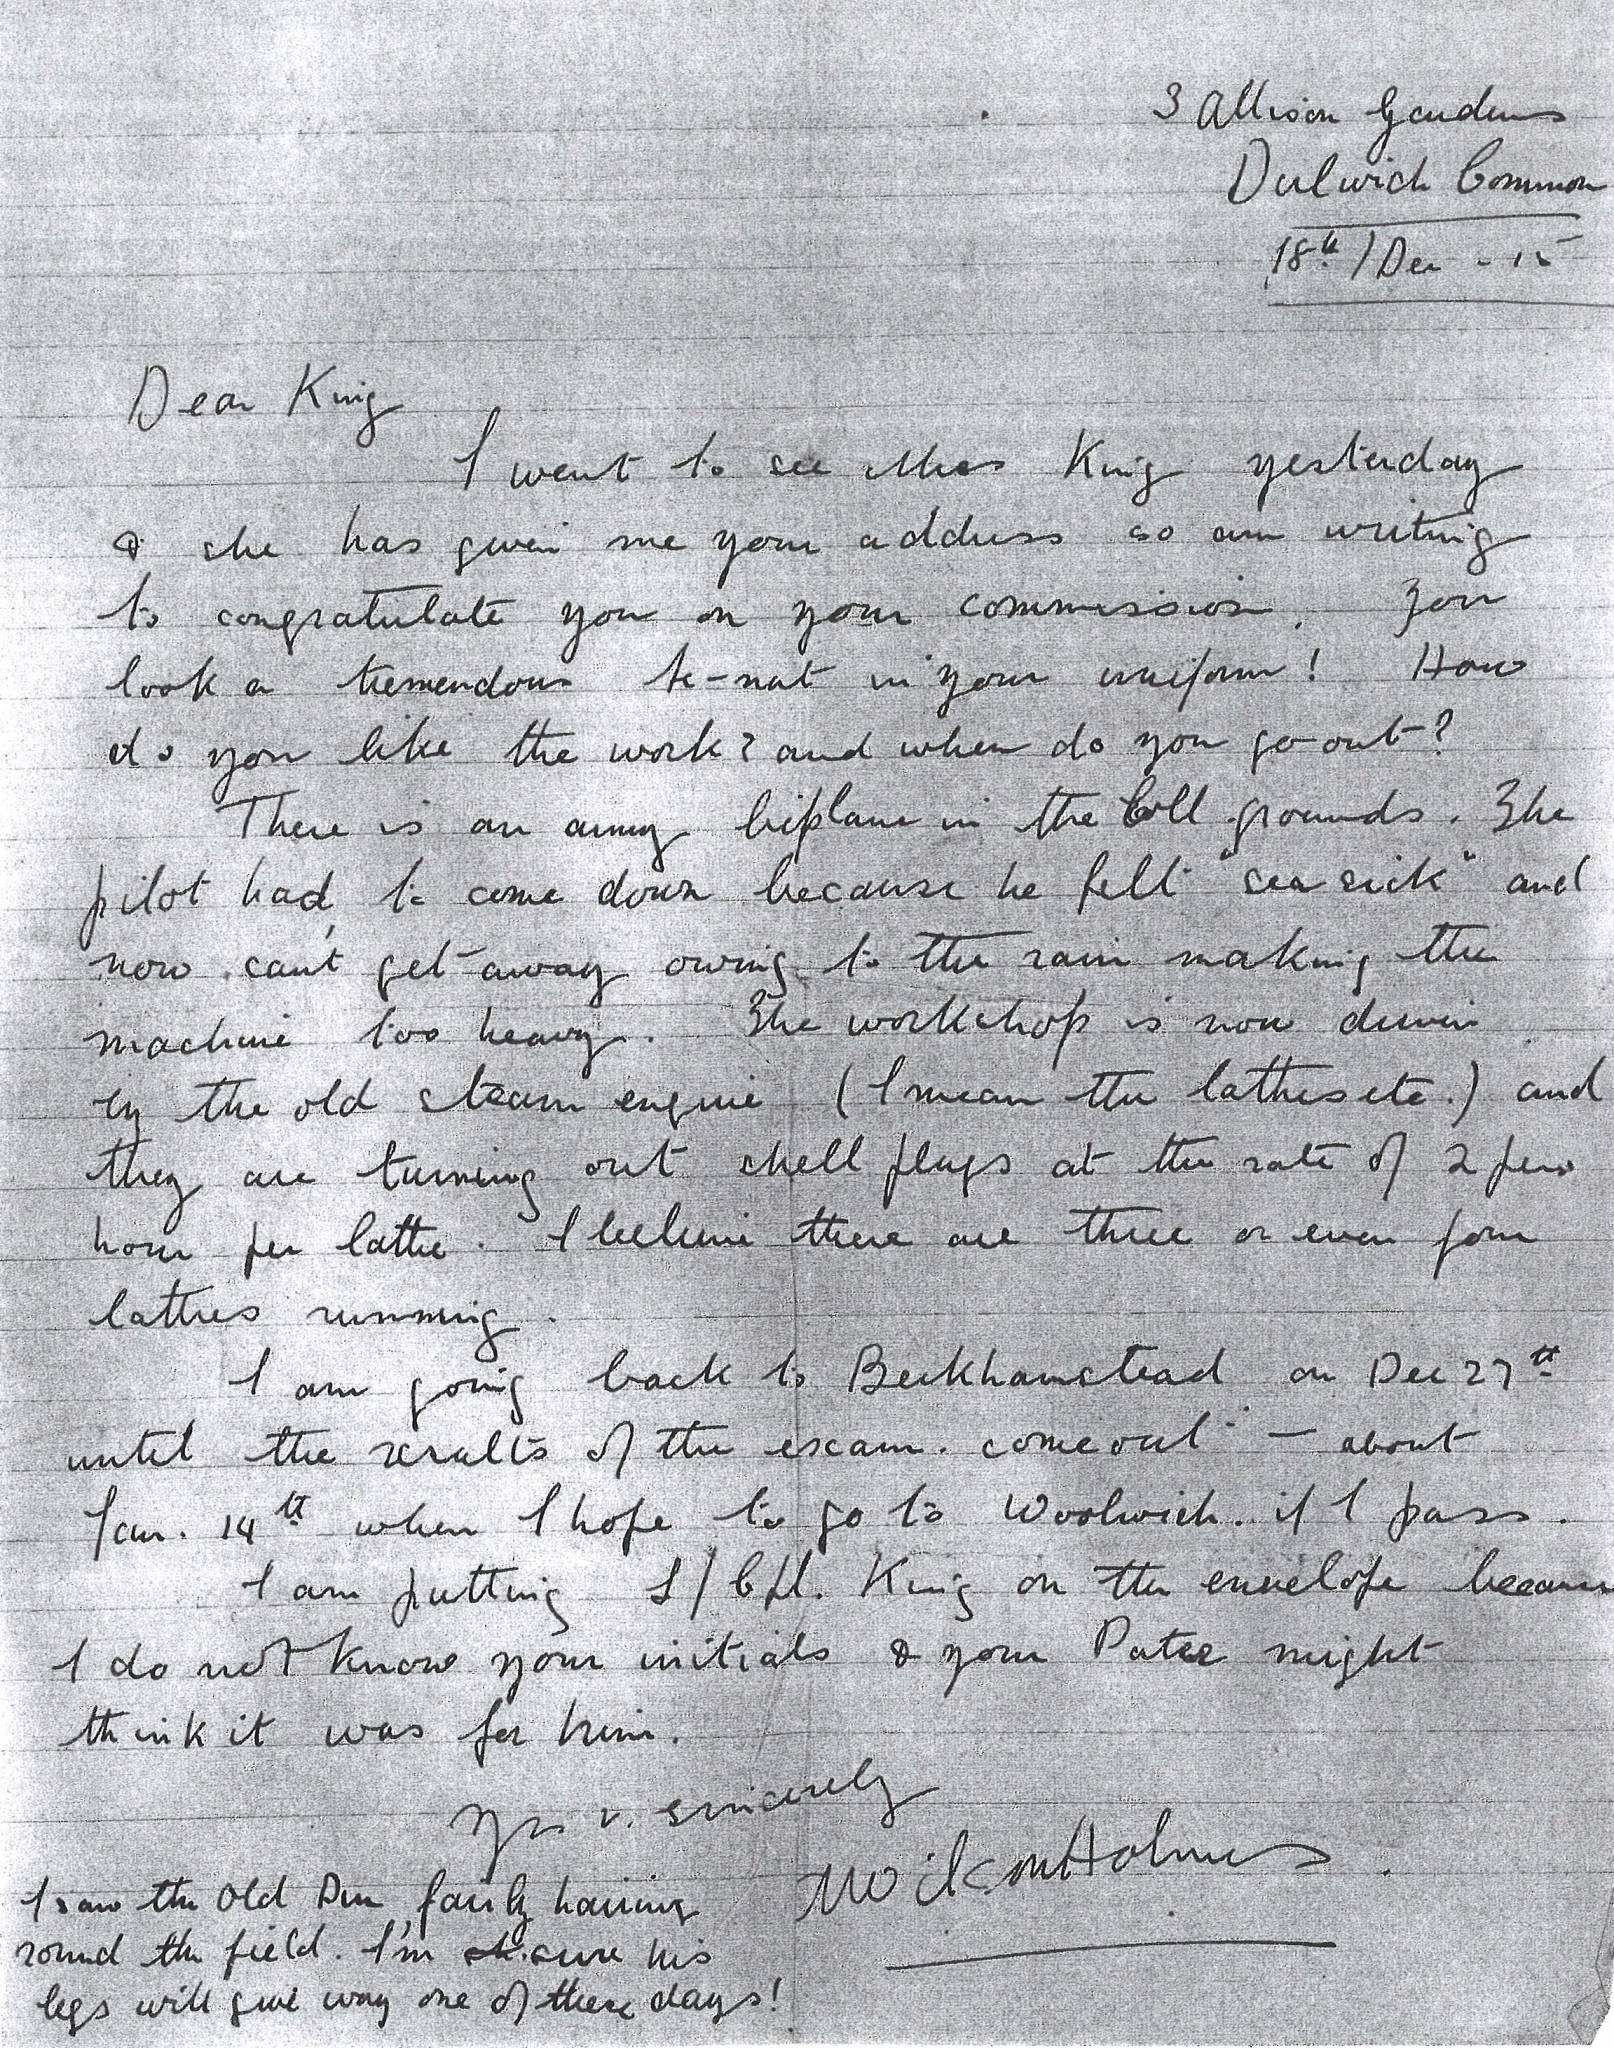 King HA Holmes Letter